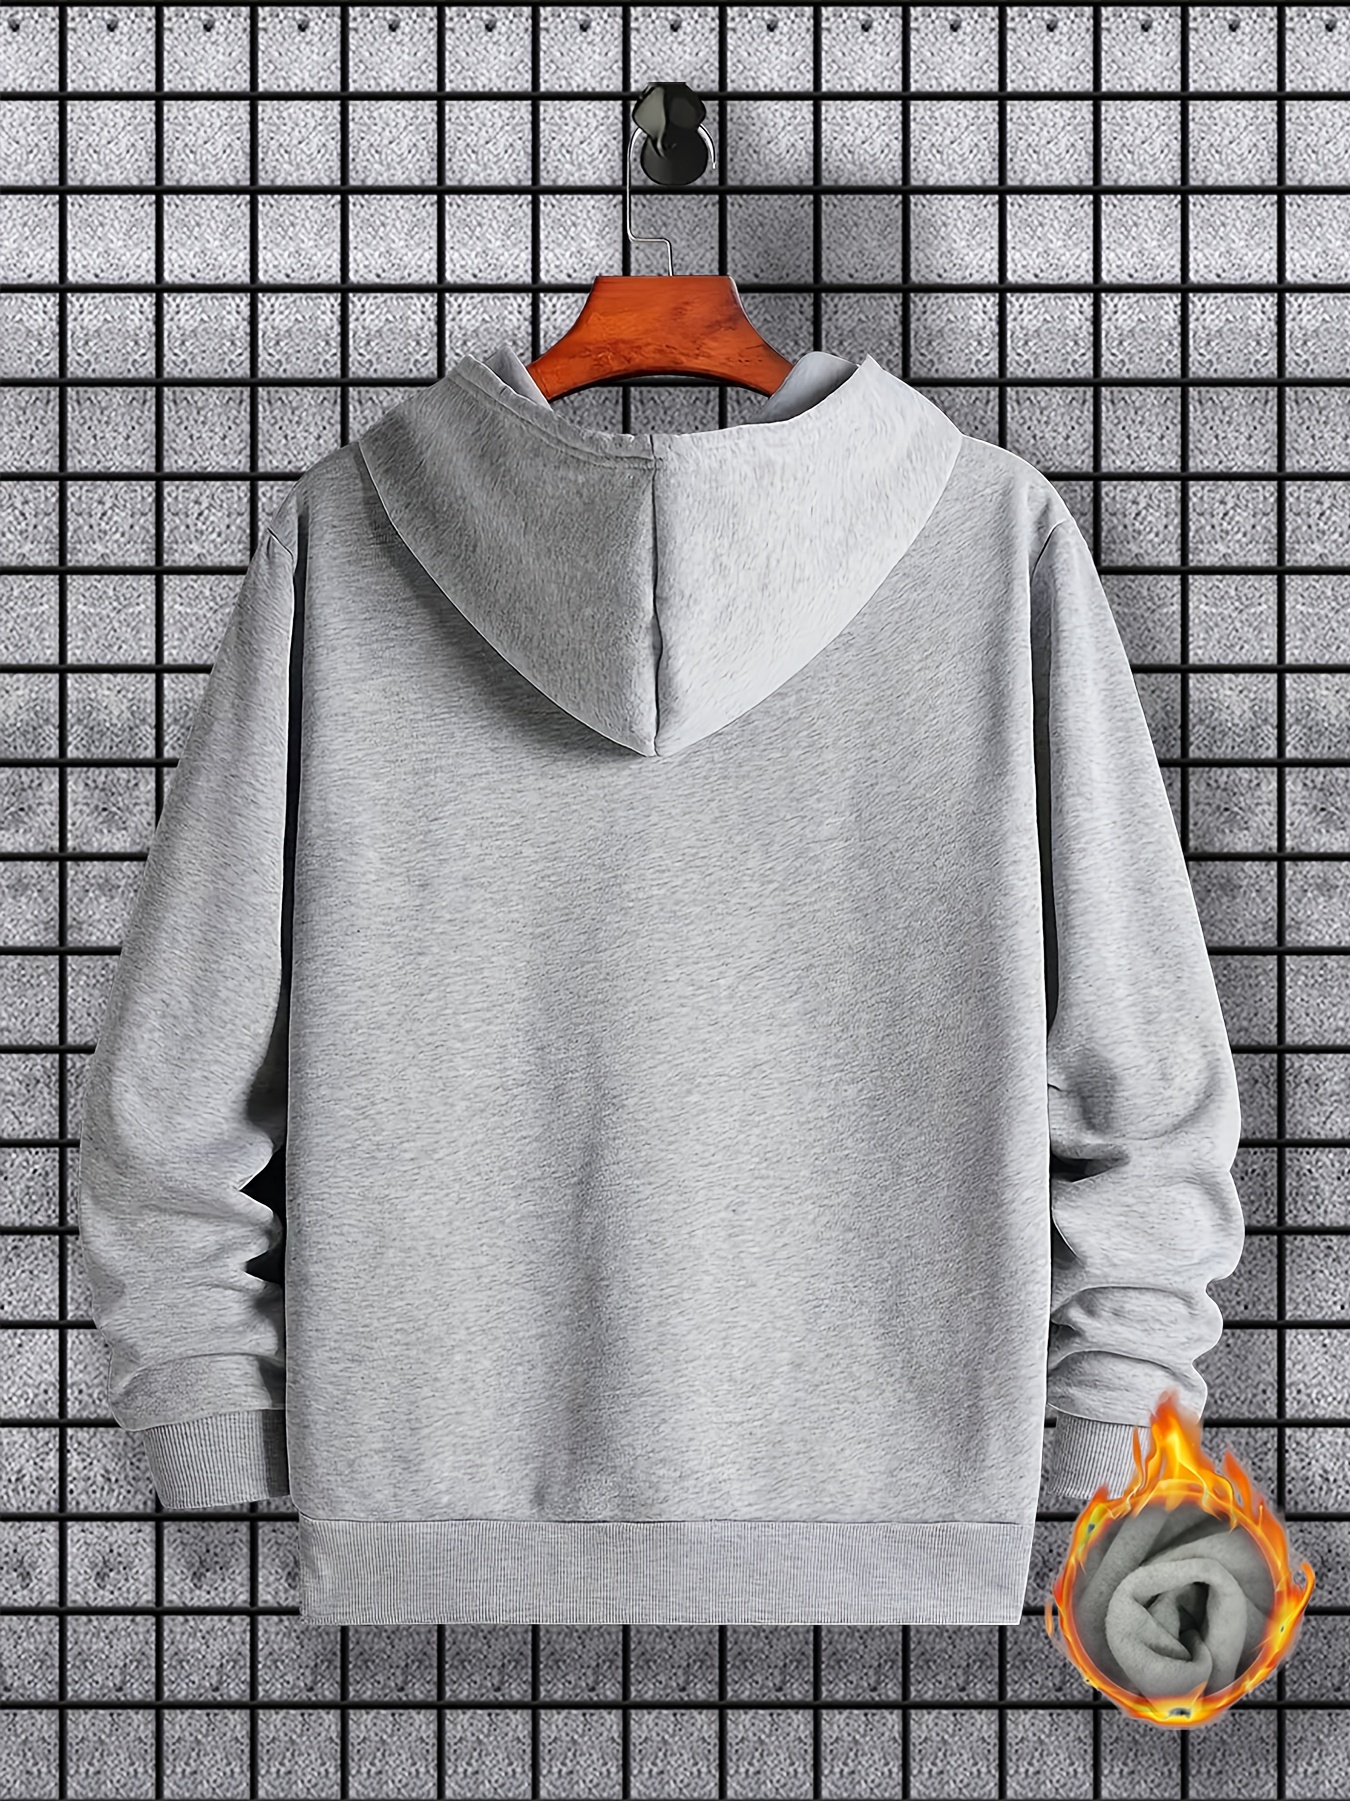 bus pattern warm hoodie with kangaroo pocket mens casual pullover hooded sweatshirt details 1